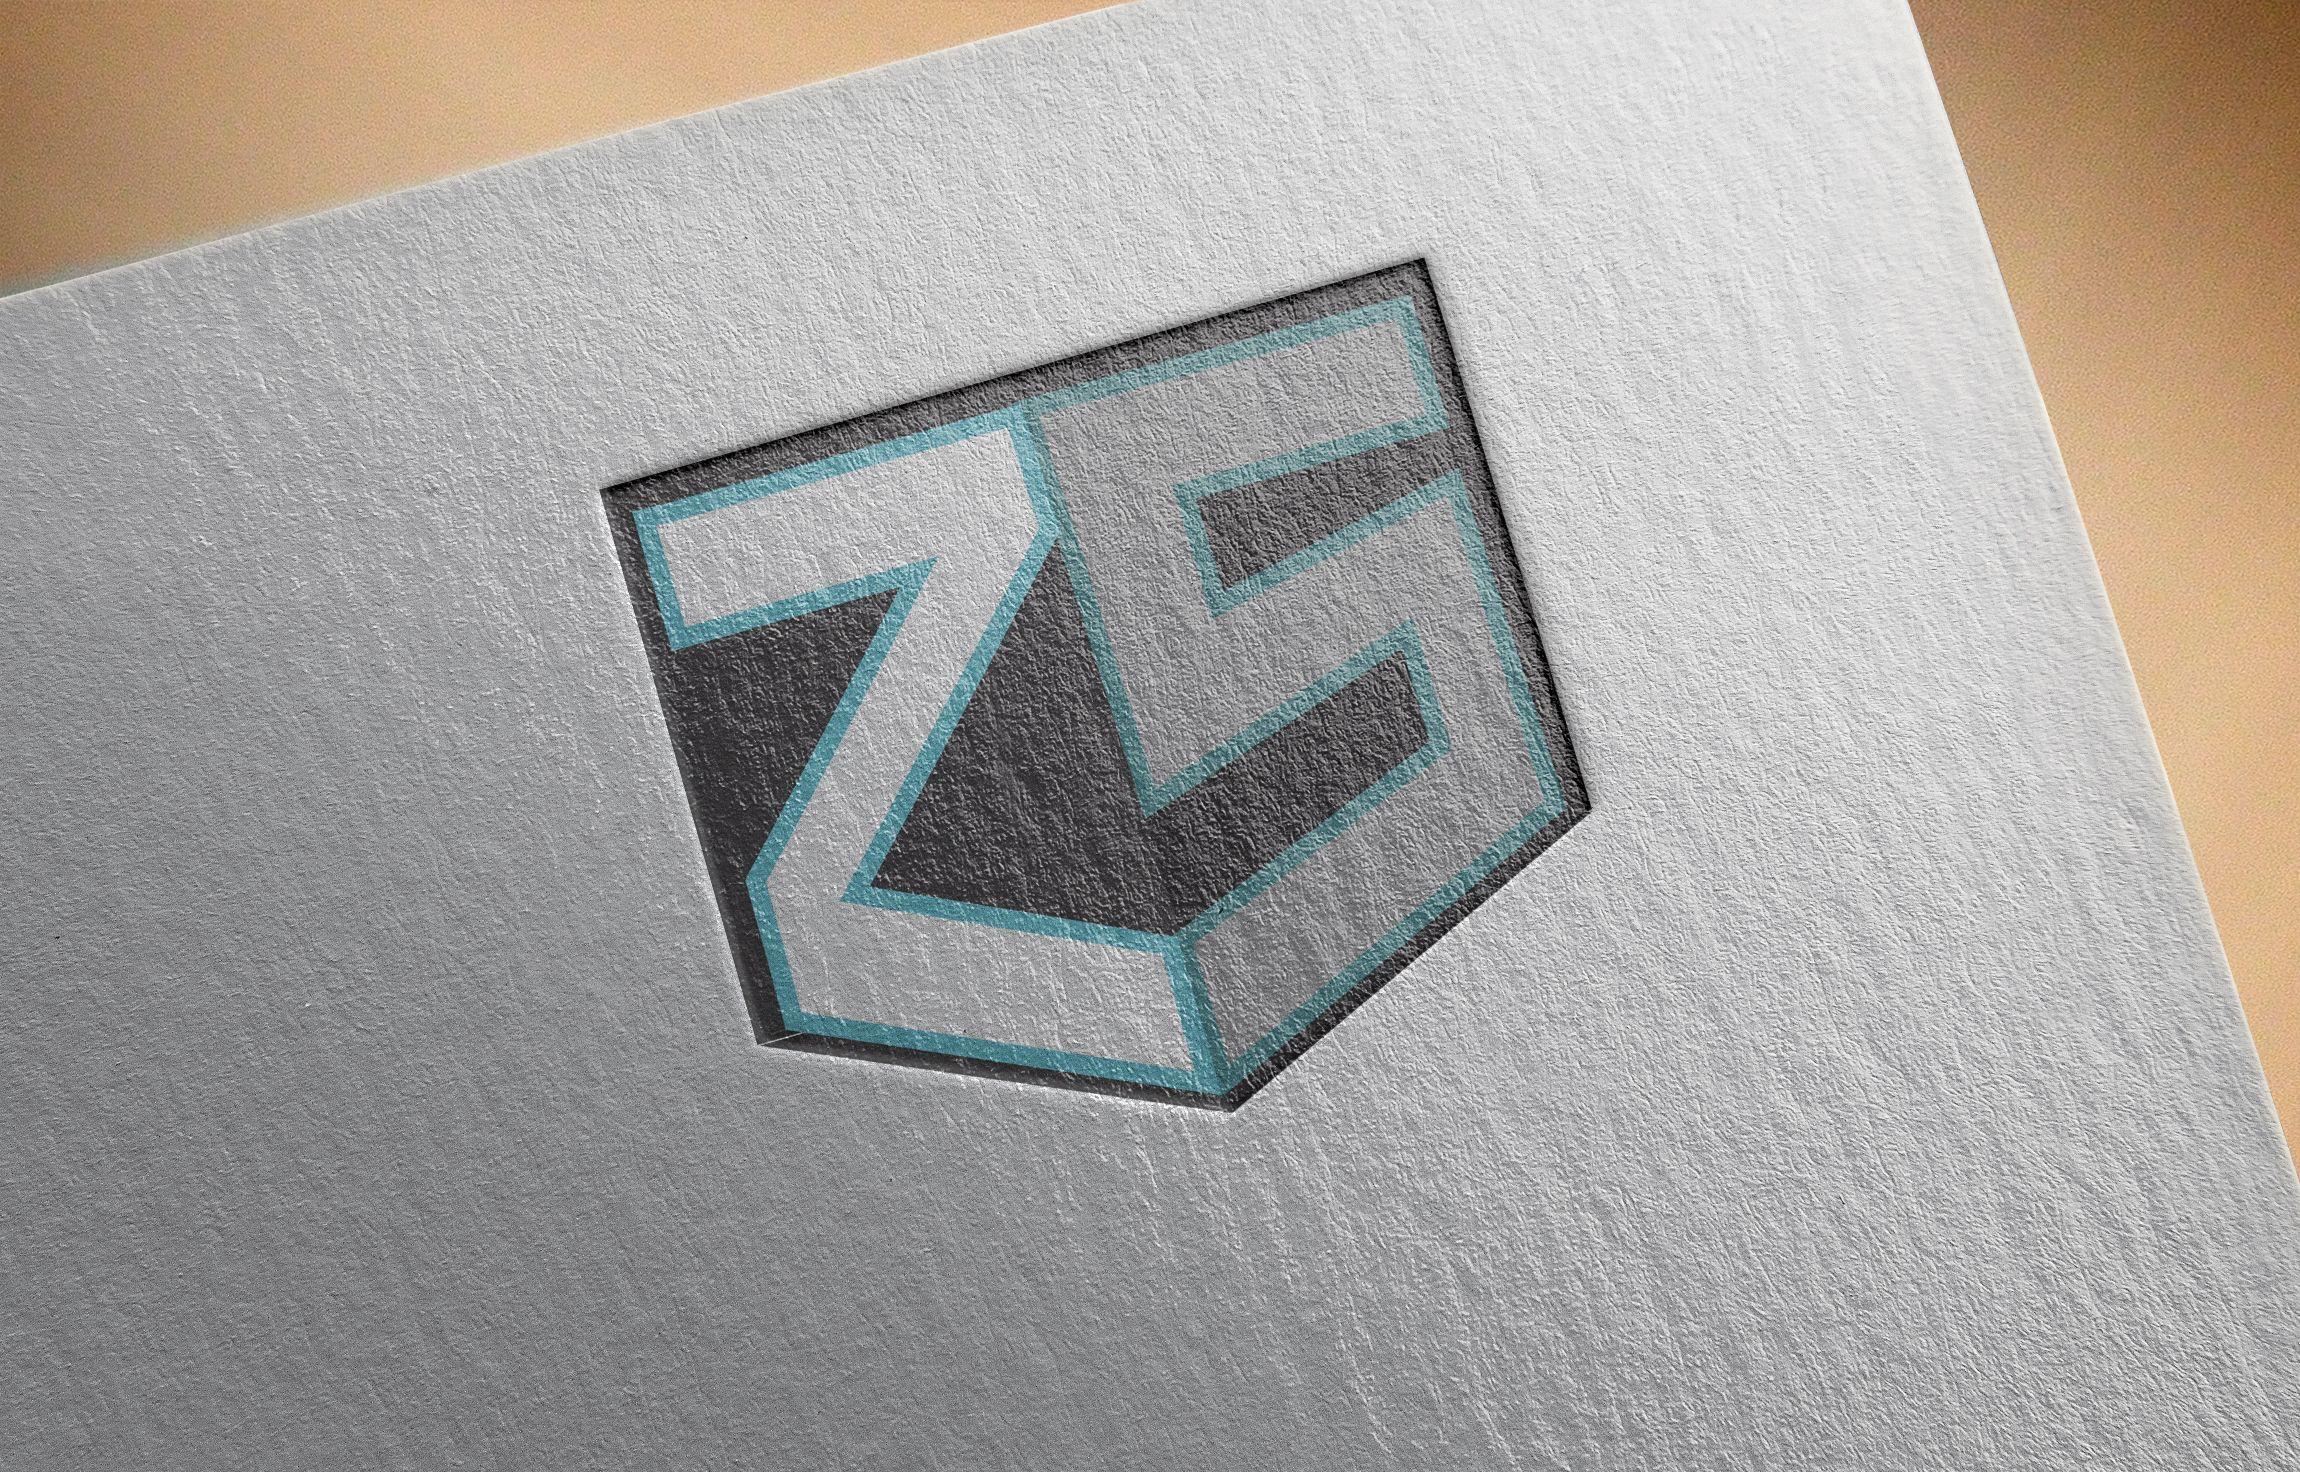 ZS Logo - ZS